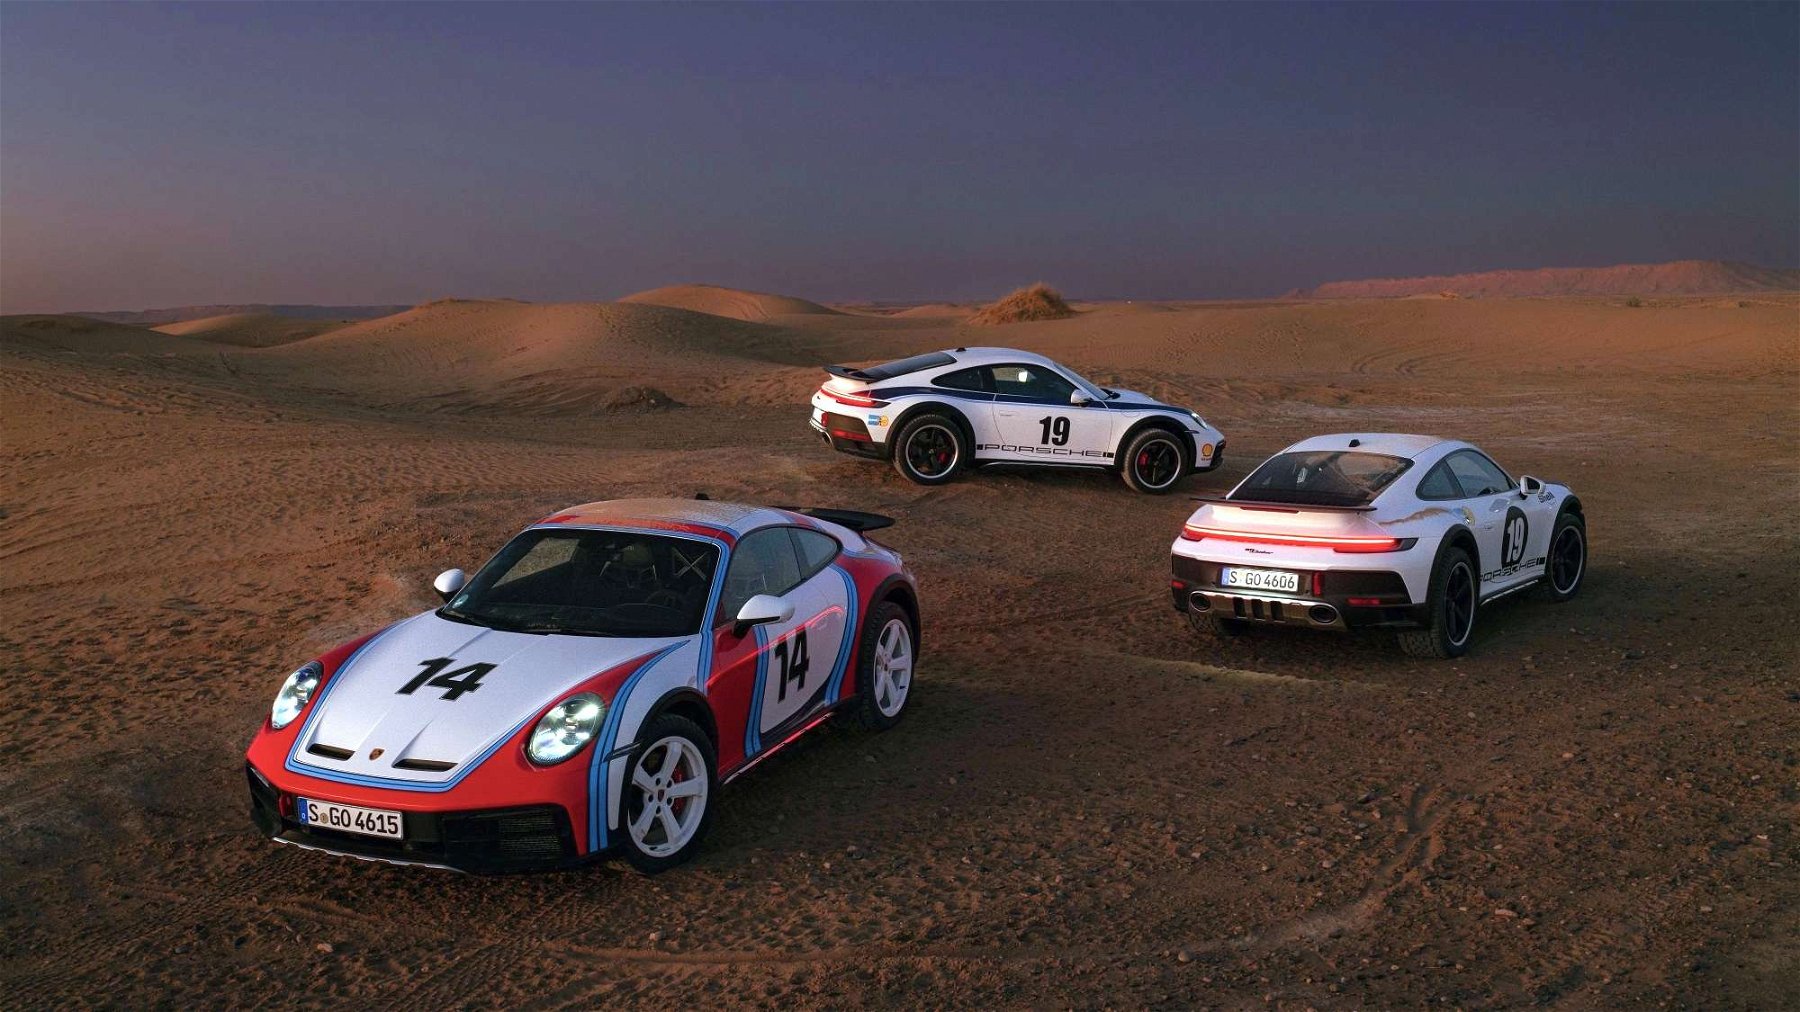 Historische Rallye-Dekorfolierung für den Porsche 911 Dakar